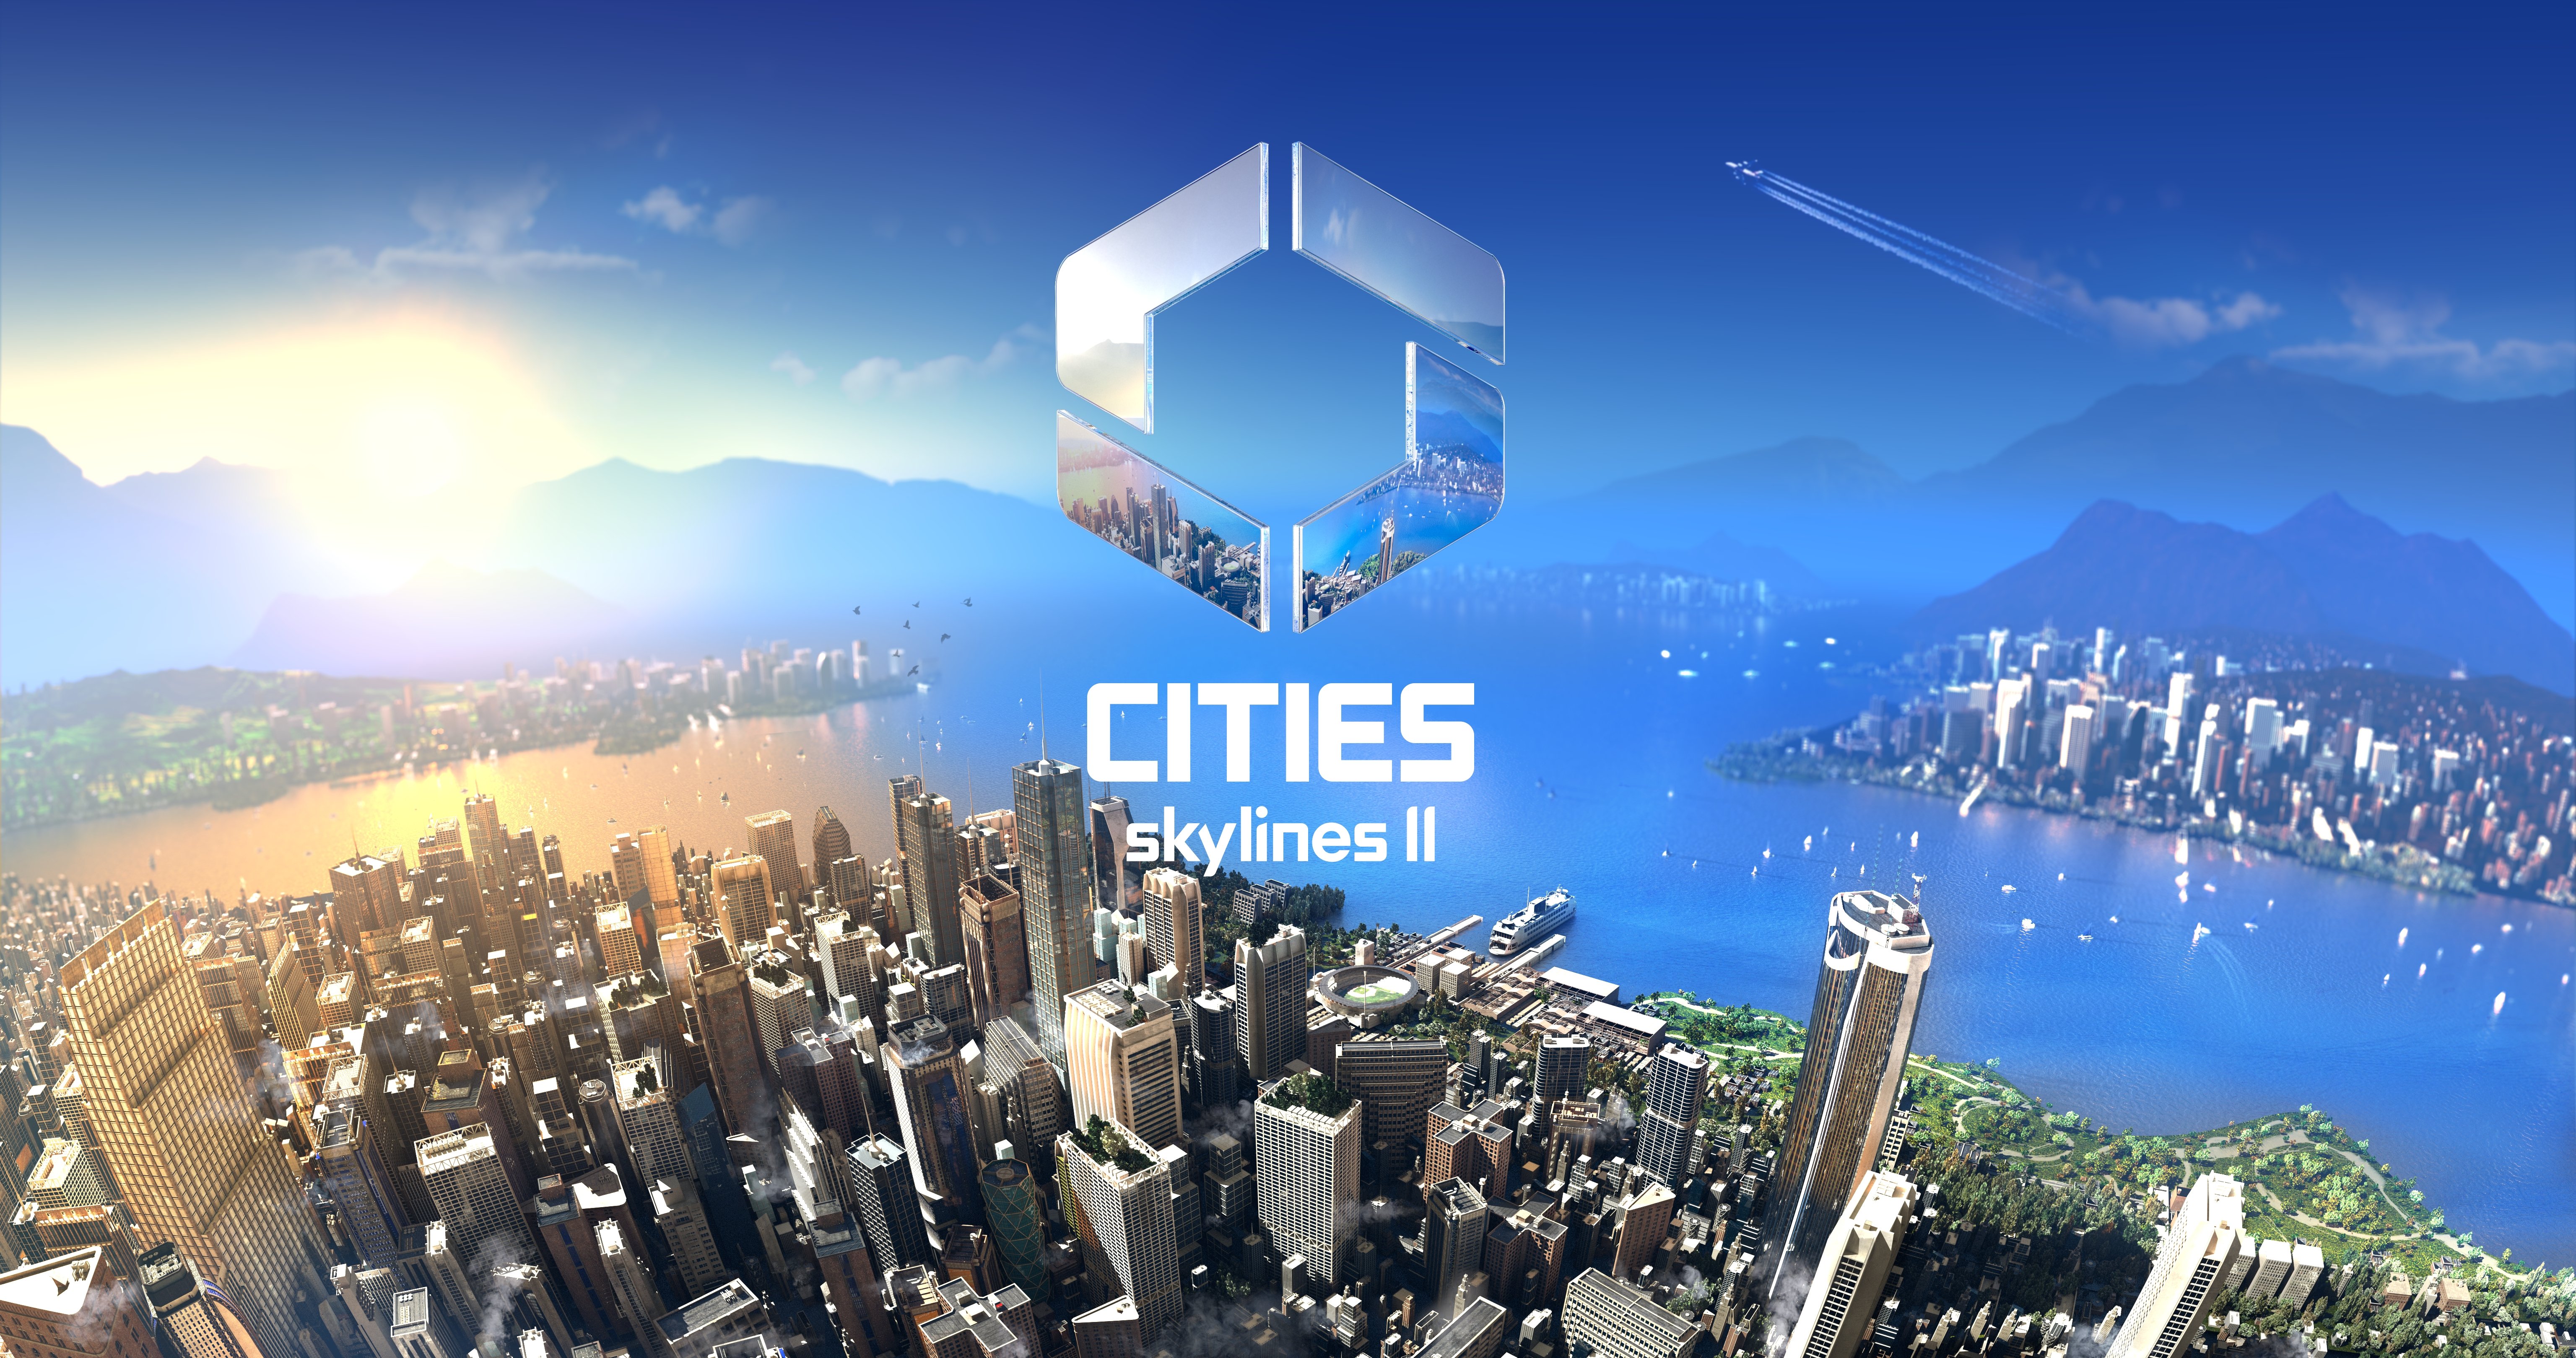 เปิดตัว Cities: Skylines II ภาคต่อของสุดยอดเกมสร้างเมืองแห่งยุค พร้อมให้เล่นทั่วโลกภายในปี 2023 นี้